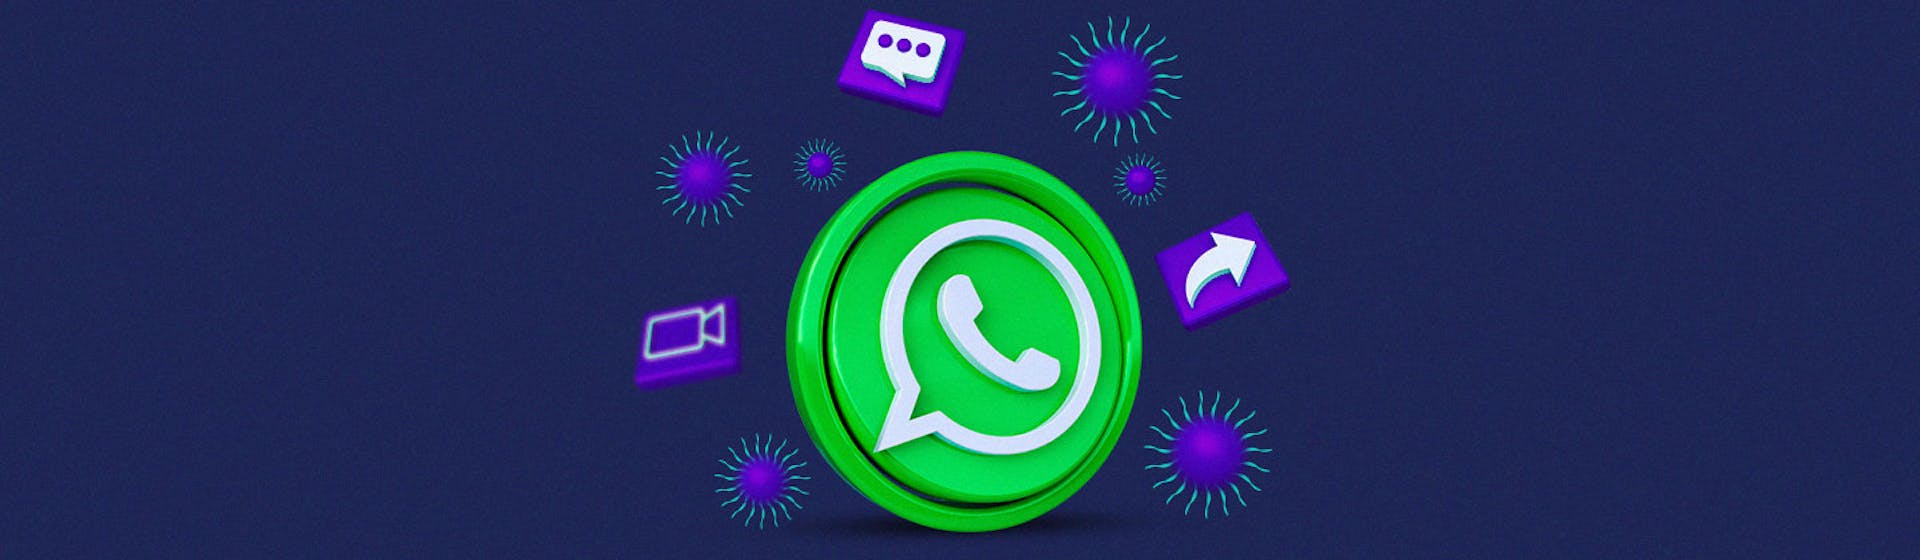 Las mejores páginas para encontrar grupos de WhatsApp de stickers sensacionales